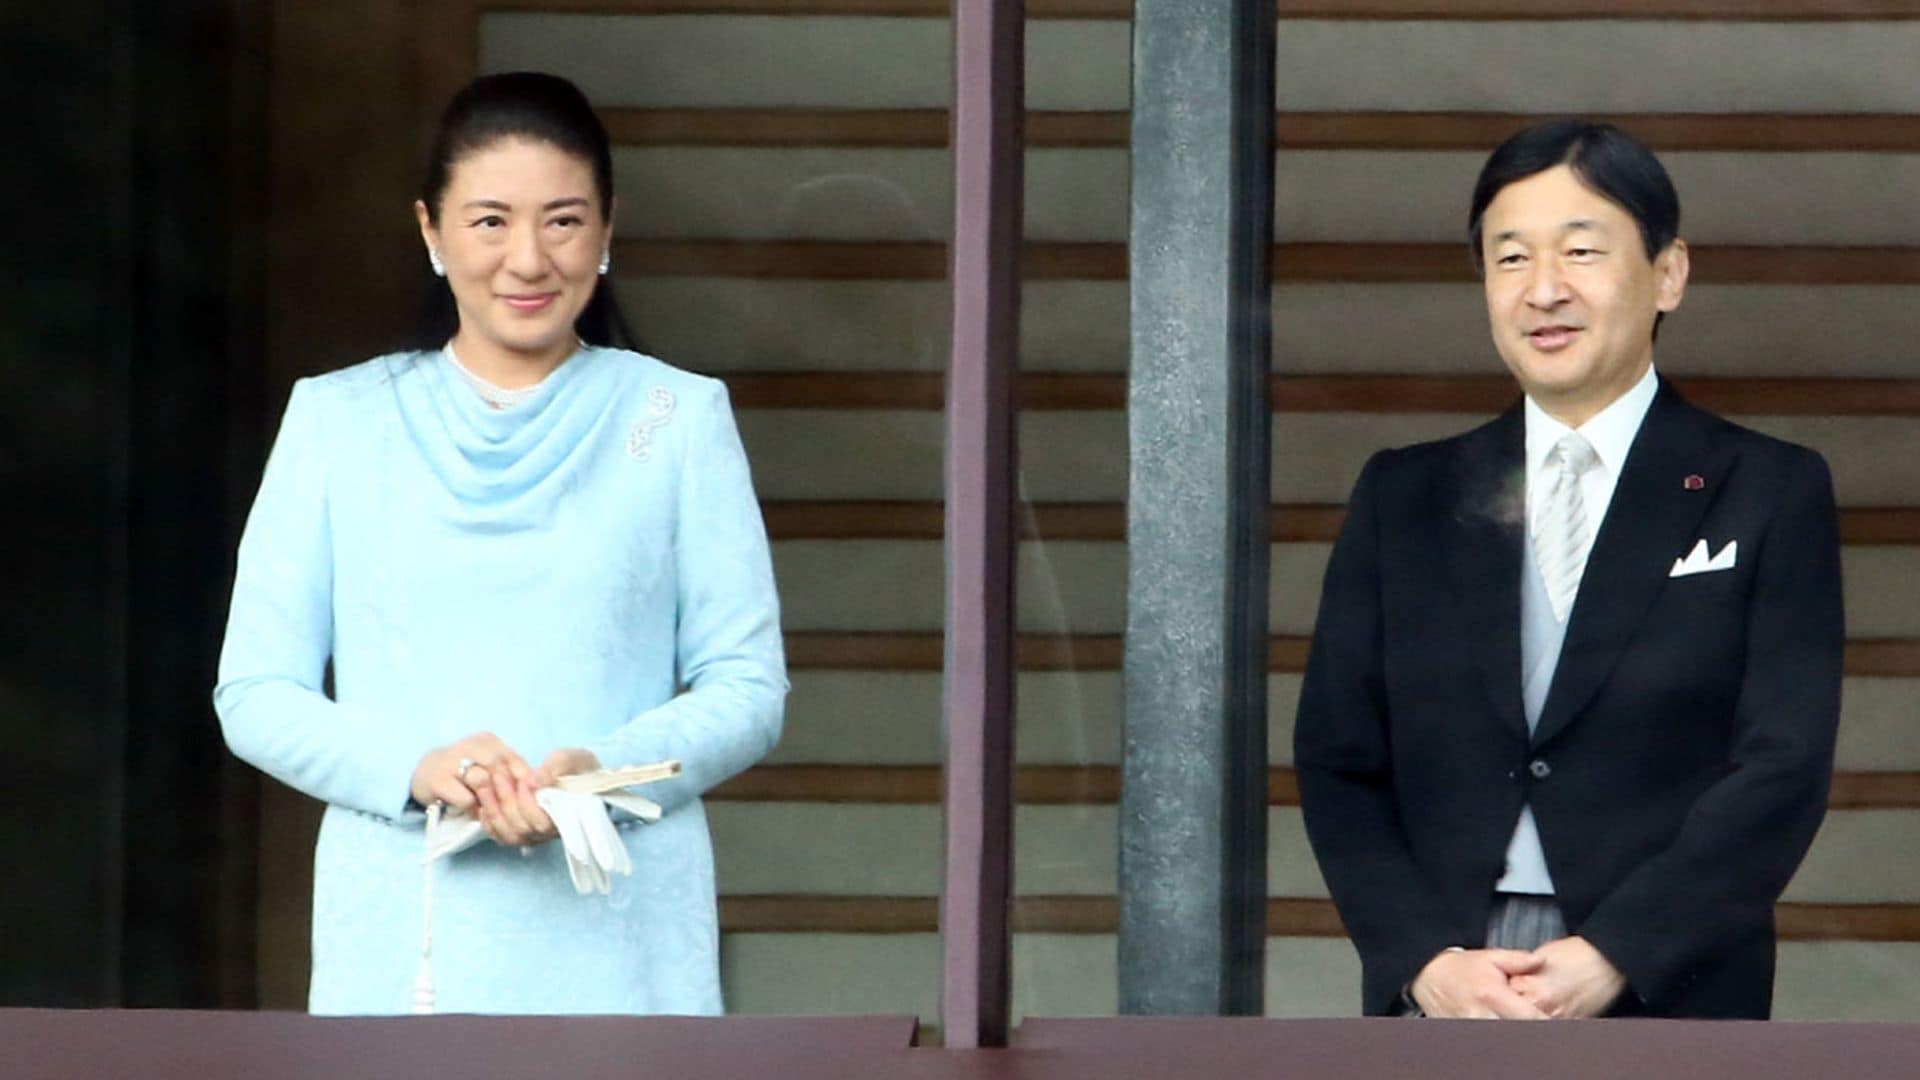 El Gobierno de Japón rechaza incluir a las mujeres en la línea de sucesión al trono